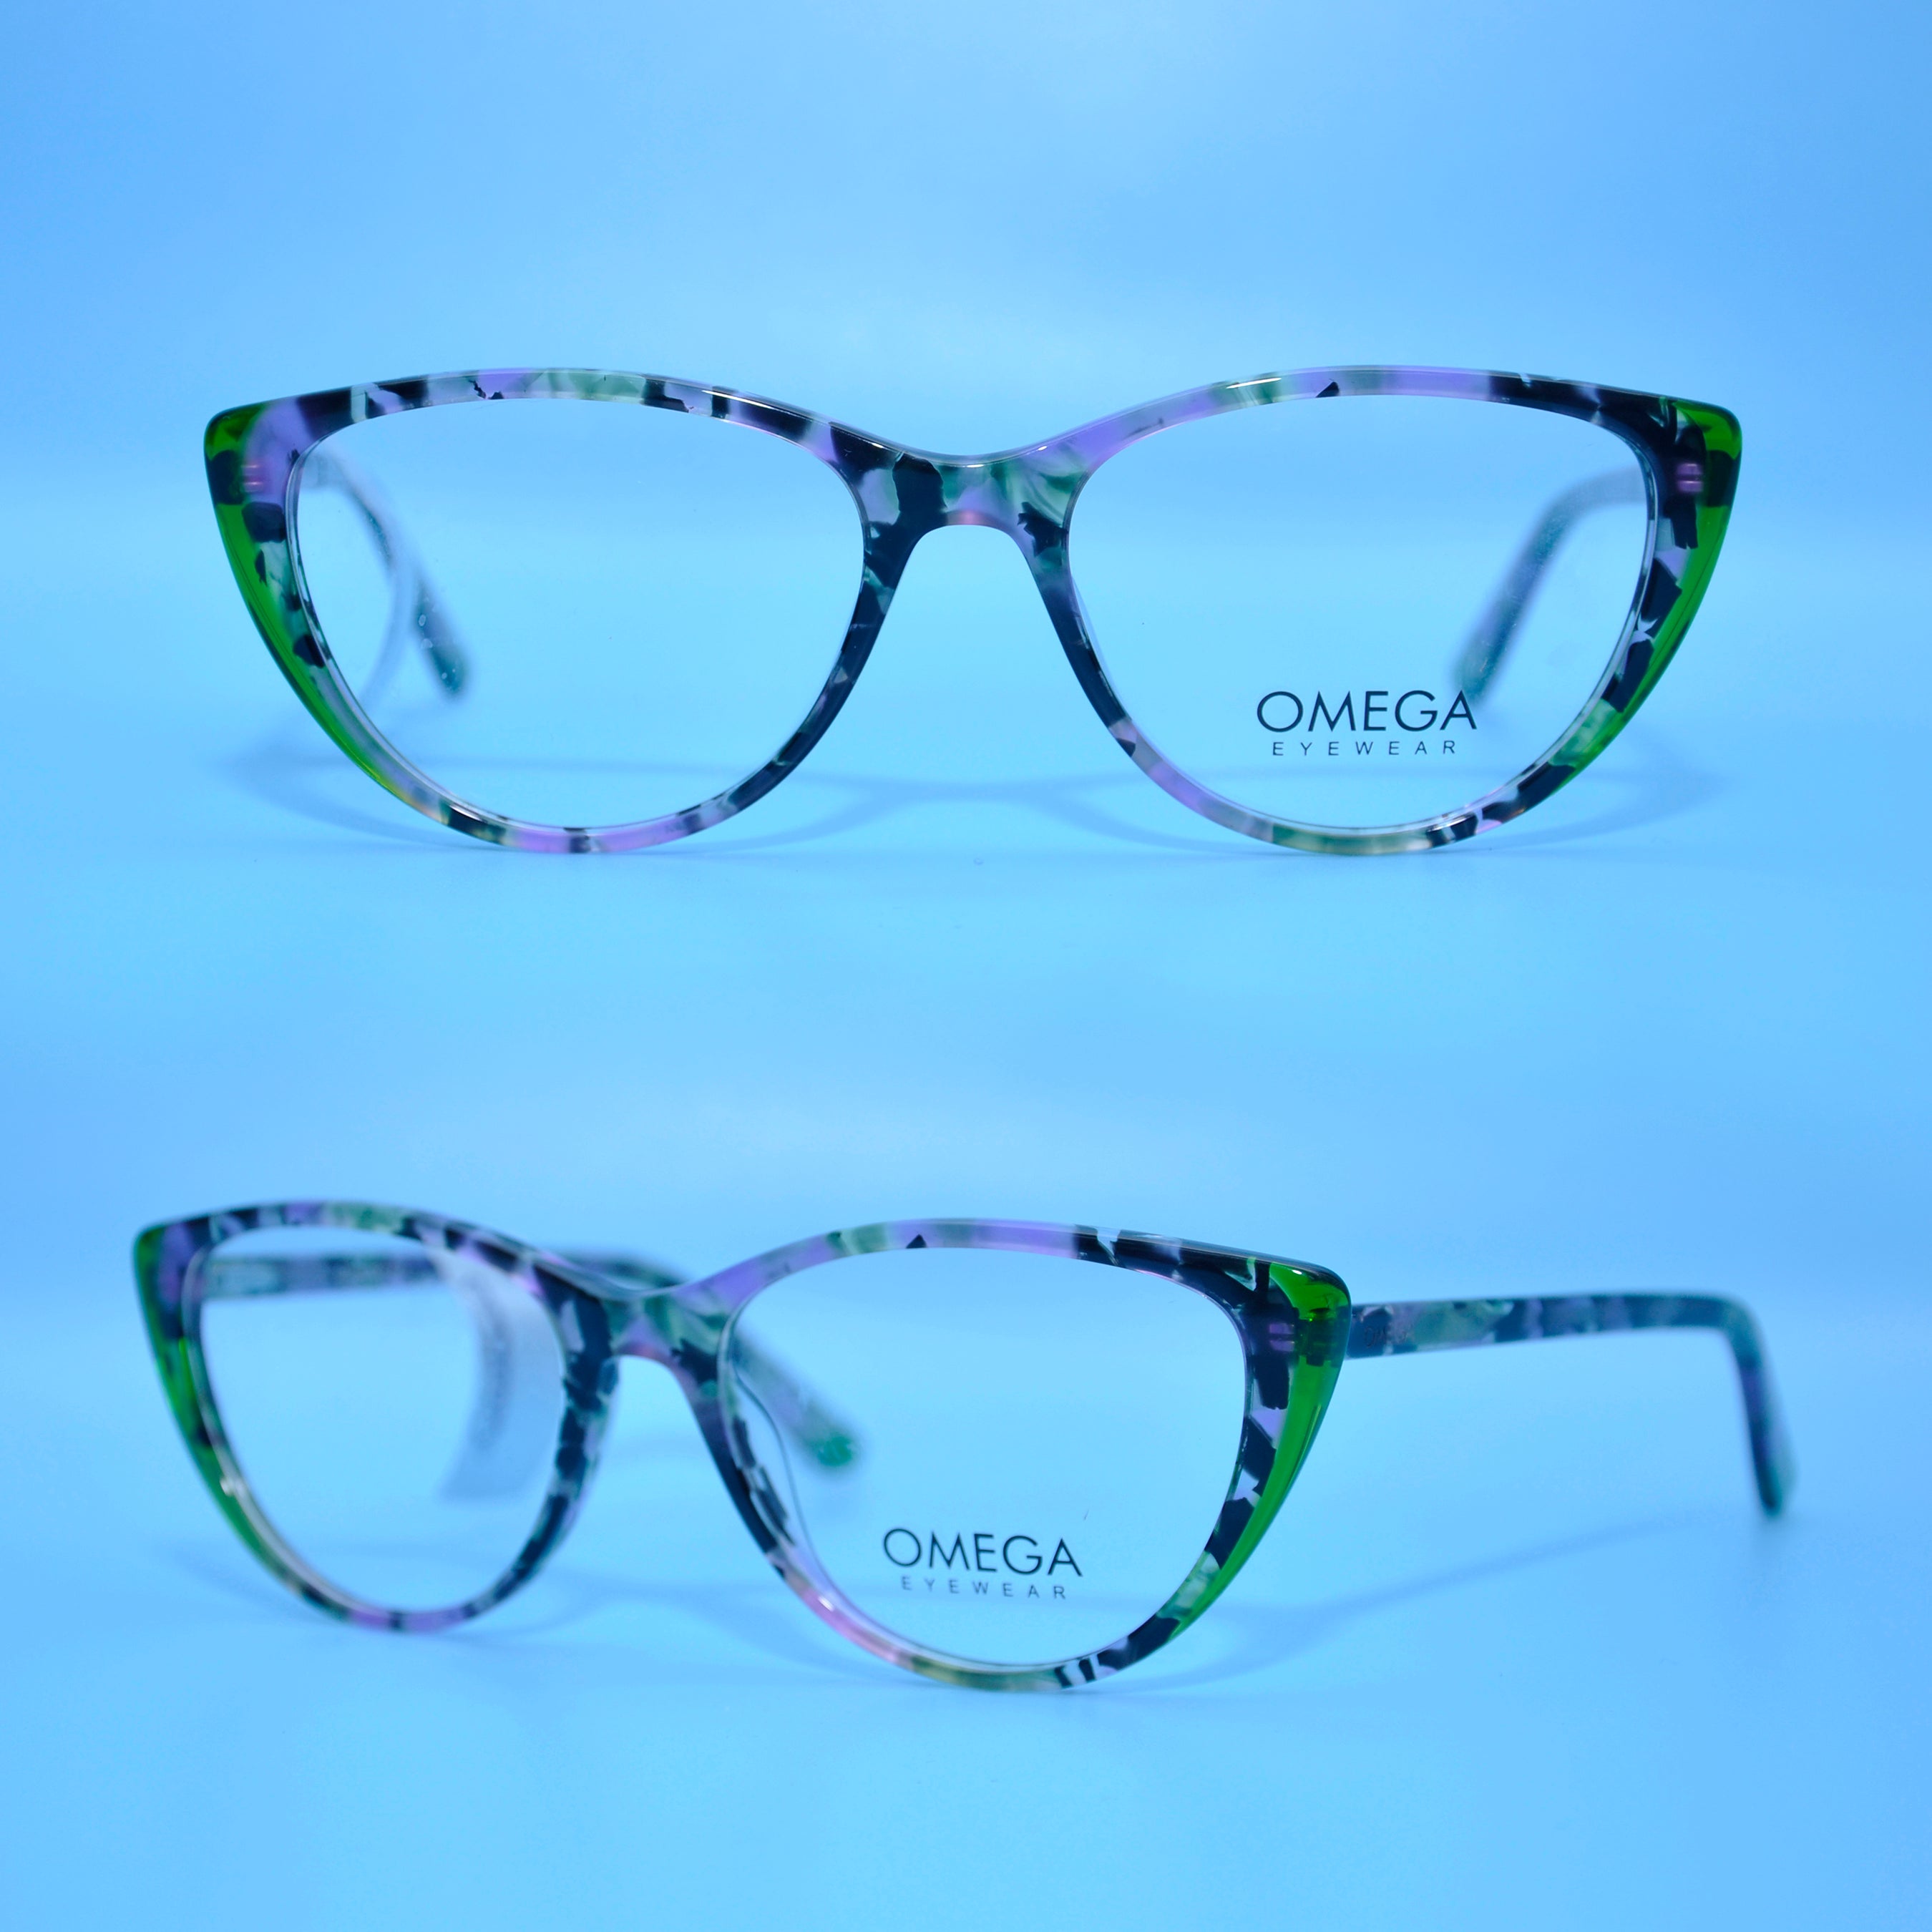 Omega Eyewear CB 5198 52 17 C4